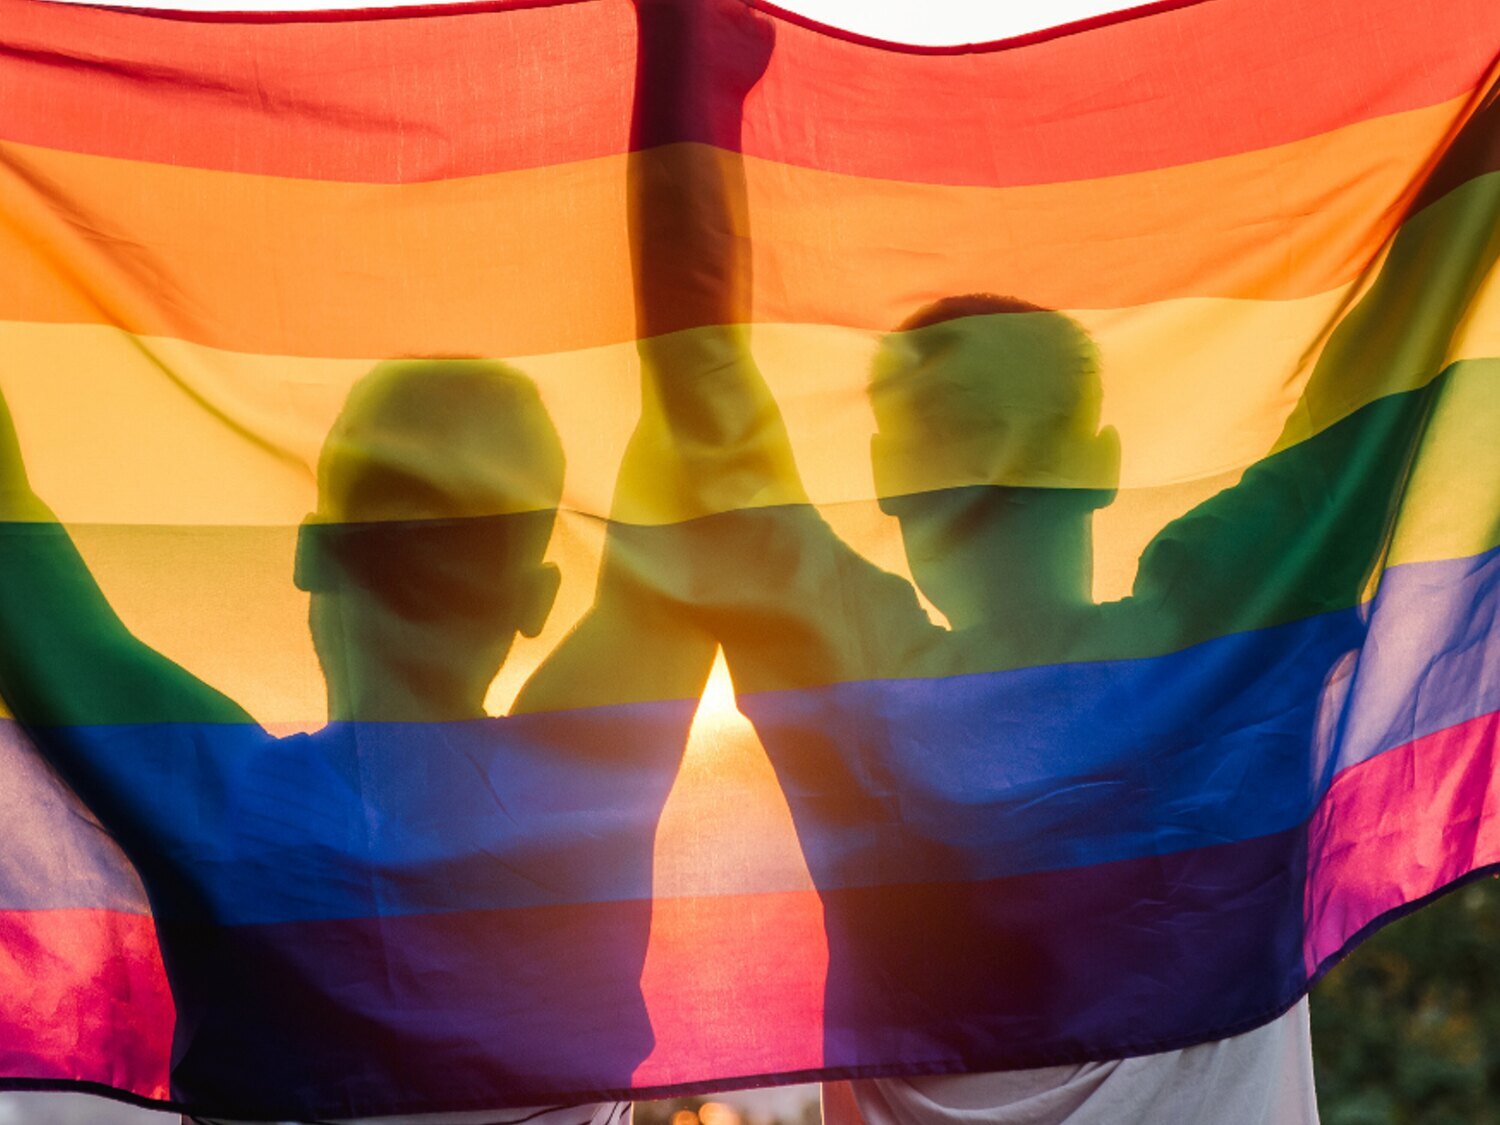 Agresión homófoba en Valencia: una decena de personas dan una paliza a dos jóvenes gays